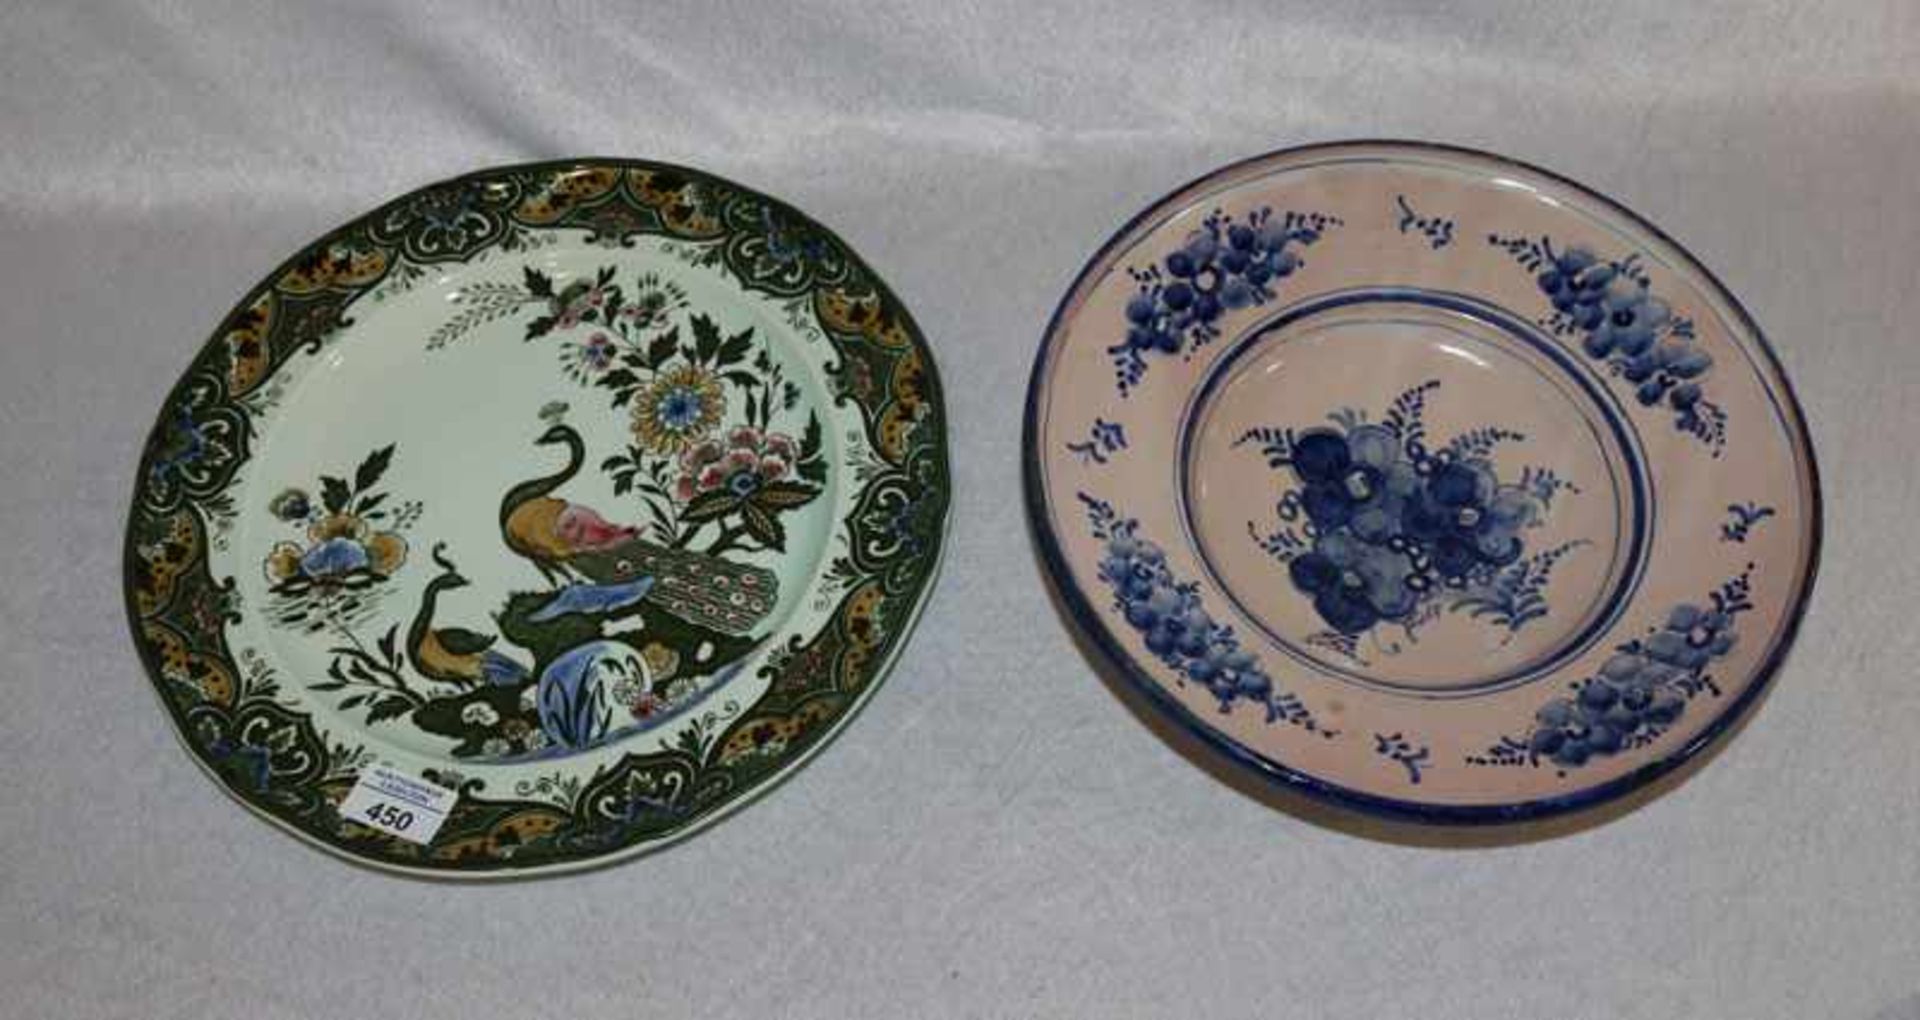 Villeroy & Boch Teller, 'Paon', D 32 cm, und Keramikschale mit blauem Blumendekor, D 29 cm,